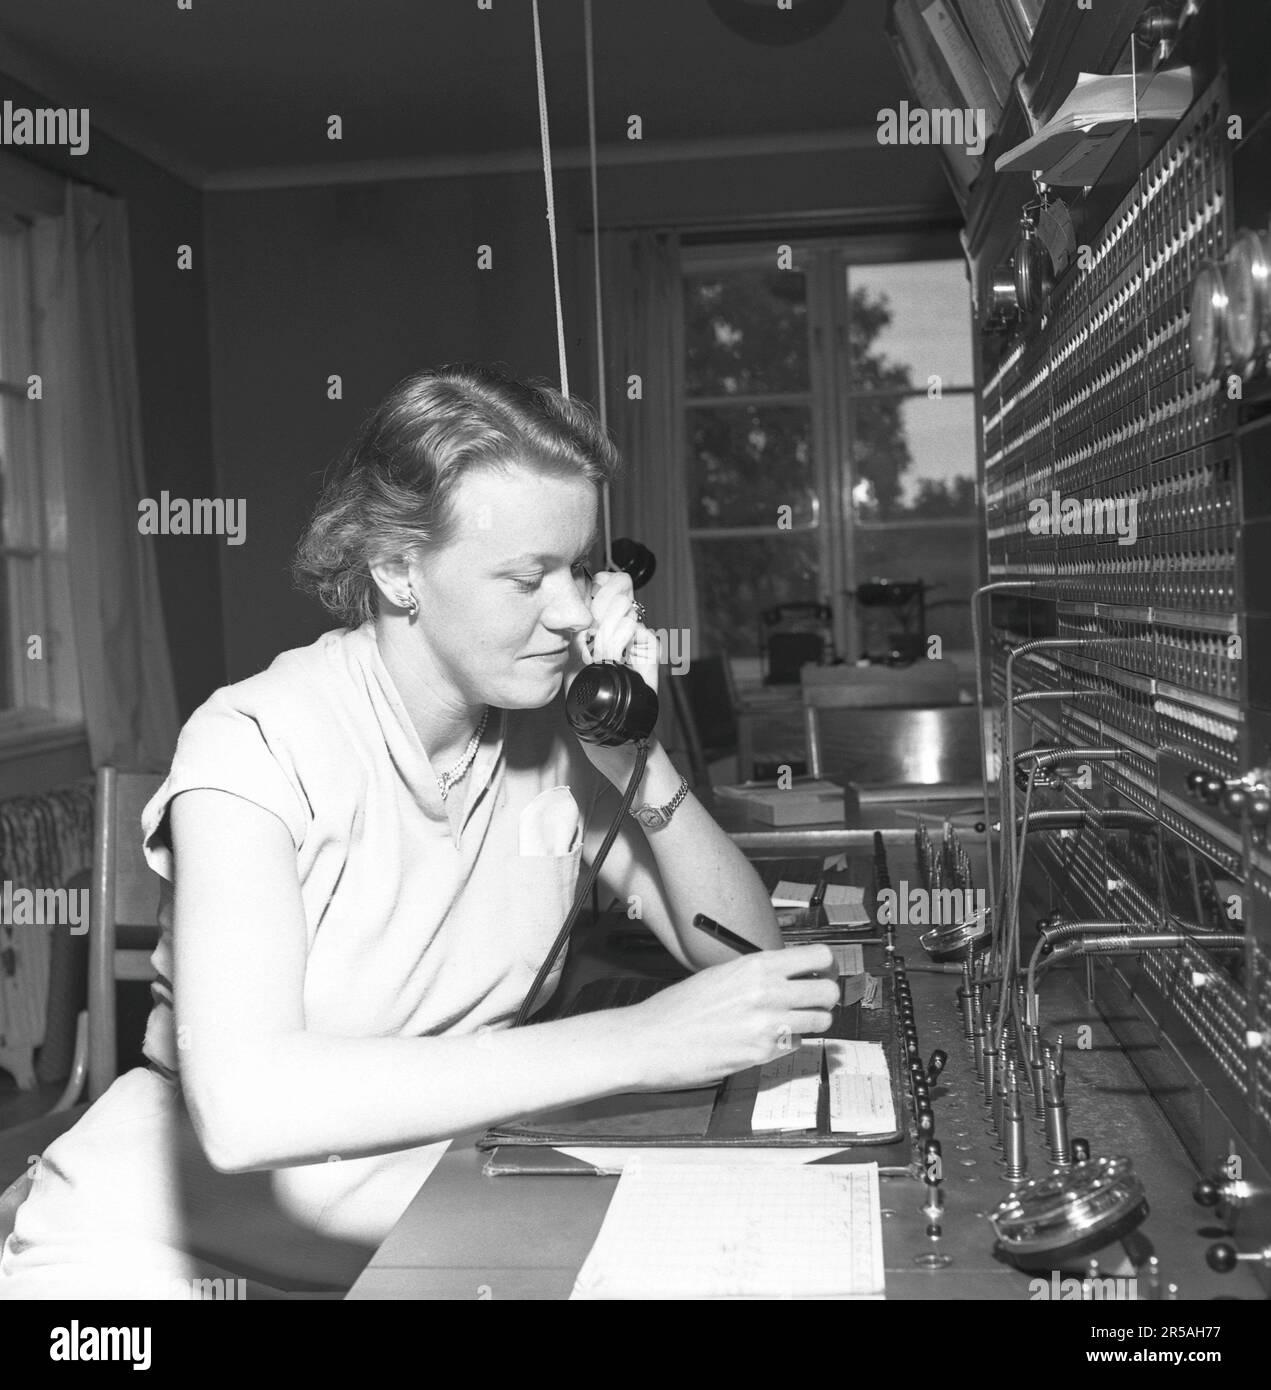 Telefonie in den 1950er. Eine Frau, die an einer Telefonzentrale arbeitet, als Vermittlung. Ein manuell betriebenes Telefonkommunikationssystem, bei dem die eingehenden Anrufe vom Betreiber weitergeleitet und an eine andere Telefonnummer umgeleitet wurden, in diesem Fall lokal innerhalb des Gebäudes, das ein Unternehmen oder eine Organisation mit vielen internen Telefonleitungen bedient. Die Telefonzentrale konnte Nachrichten entgegennehmen und Sie in die Warteschleife setzen, wenn die Leitung besetzt war. Schweden 1953. Conard Ref. 2489 Stockfoto